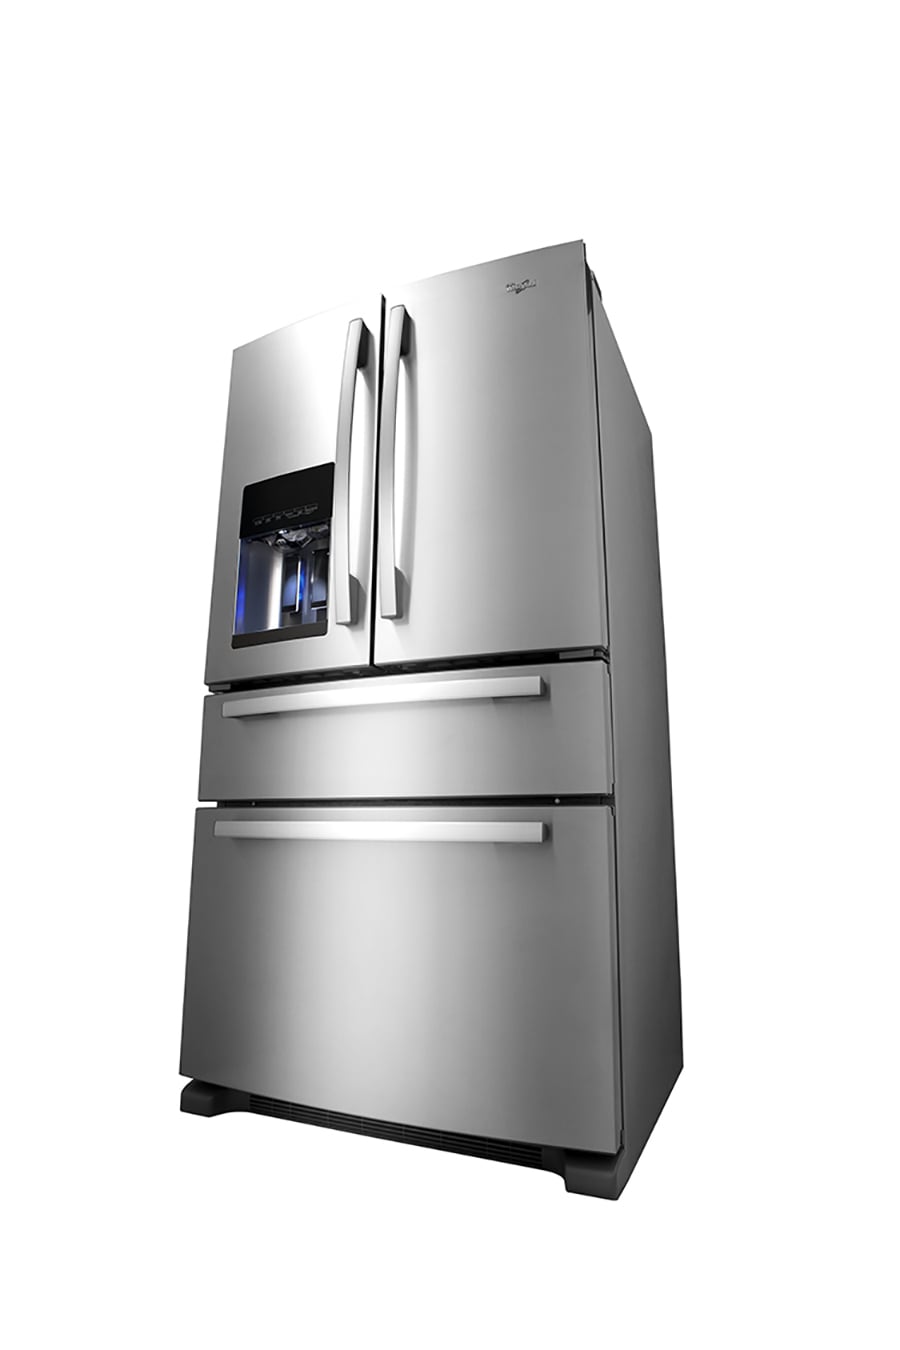 Whirlpool WRS325SDHZ Refrigerator Snack shelf W11351247 * 